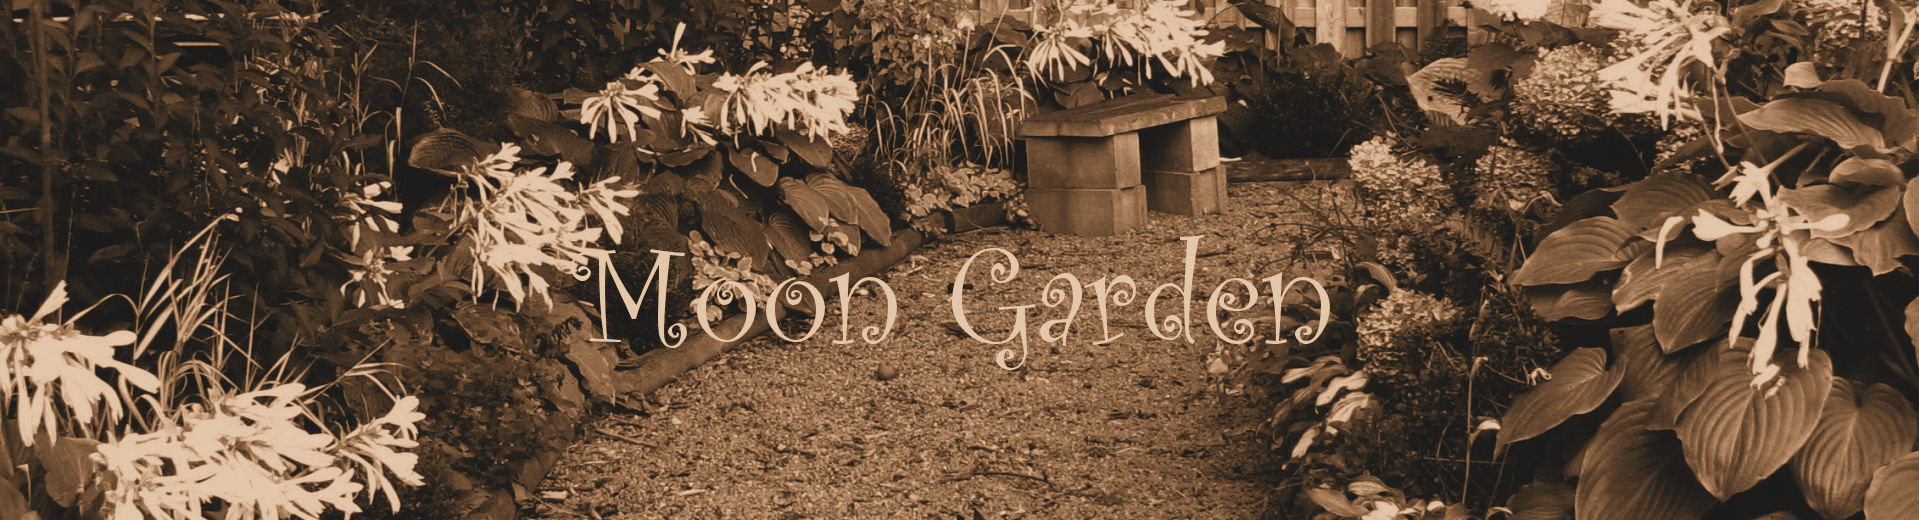 moon garden, white garden with silver foliage logo